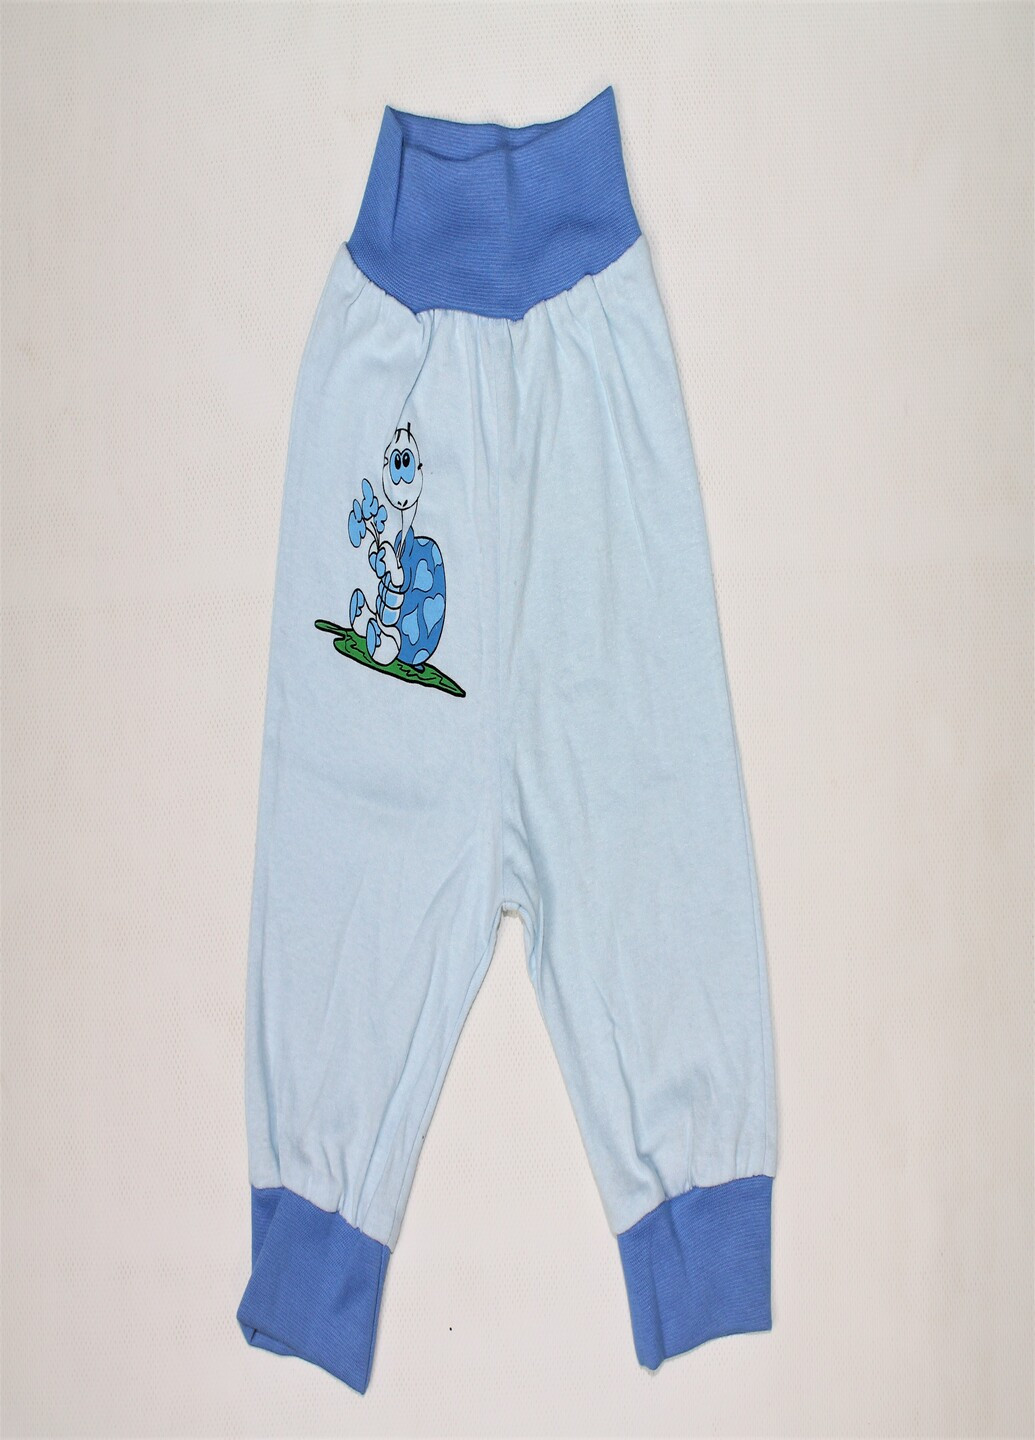 Убранка штаны рисунок голубой кэжуал производство - Украина